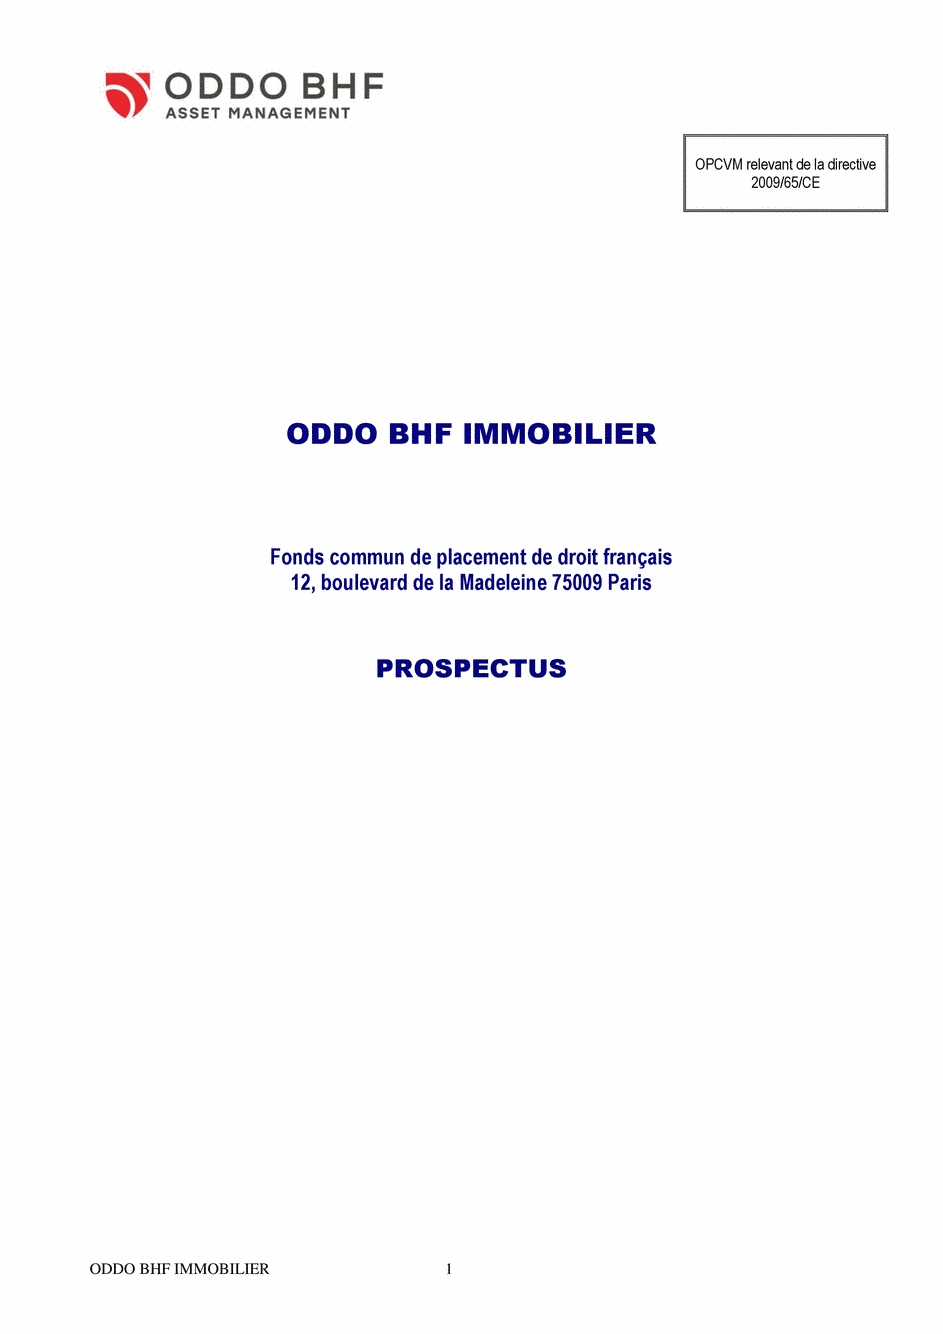 Prospectus ODDO BHF IMMOBILIER CI-EUR - 12/11/2019 - Français